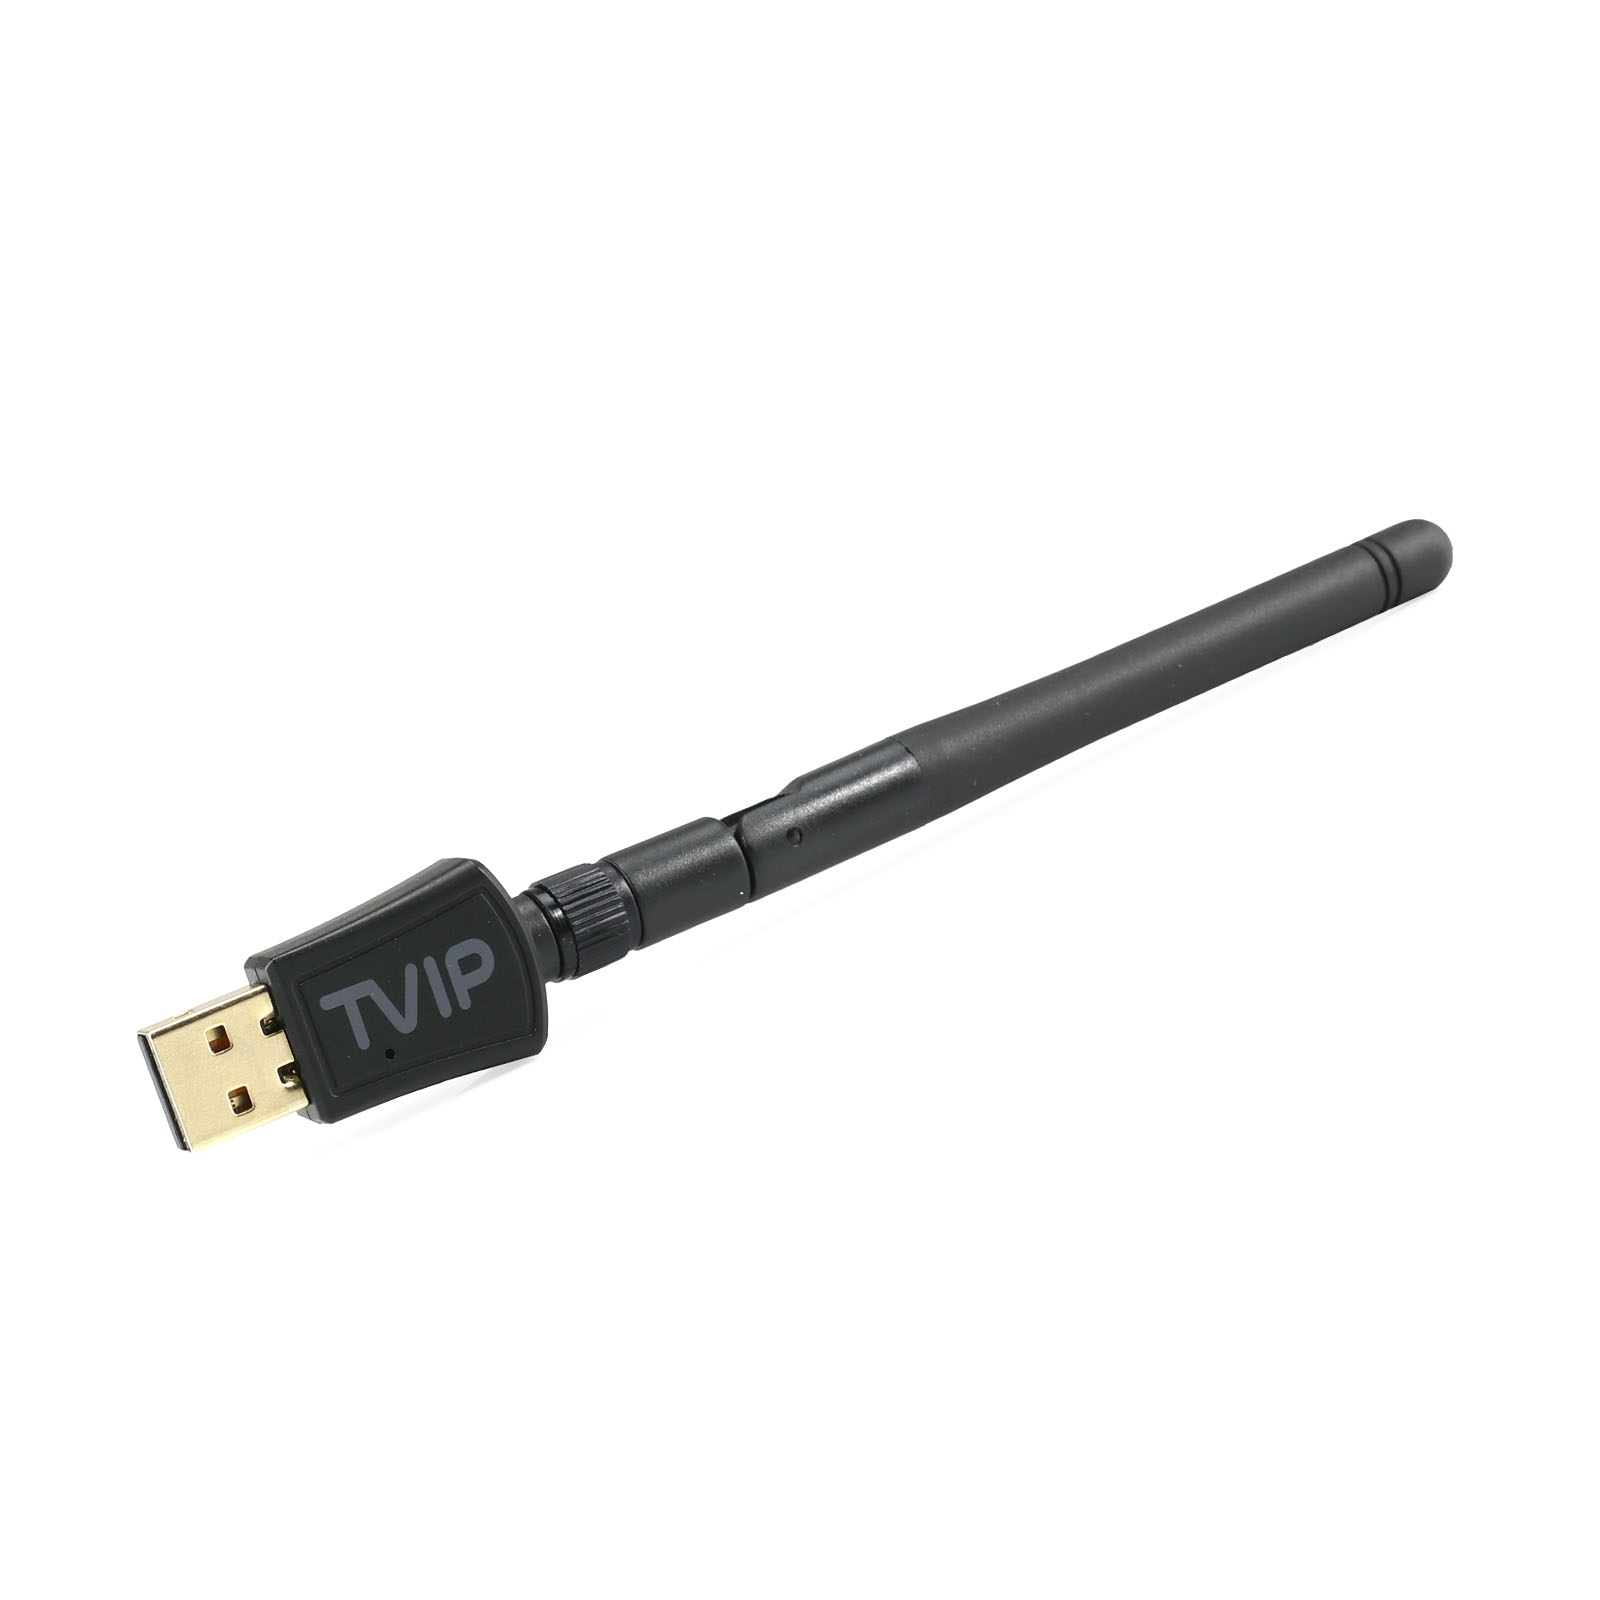 Wlan 2.4/5 GHz Stick Antenne TVIP mit 600Mbit